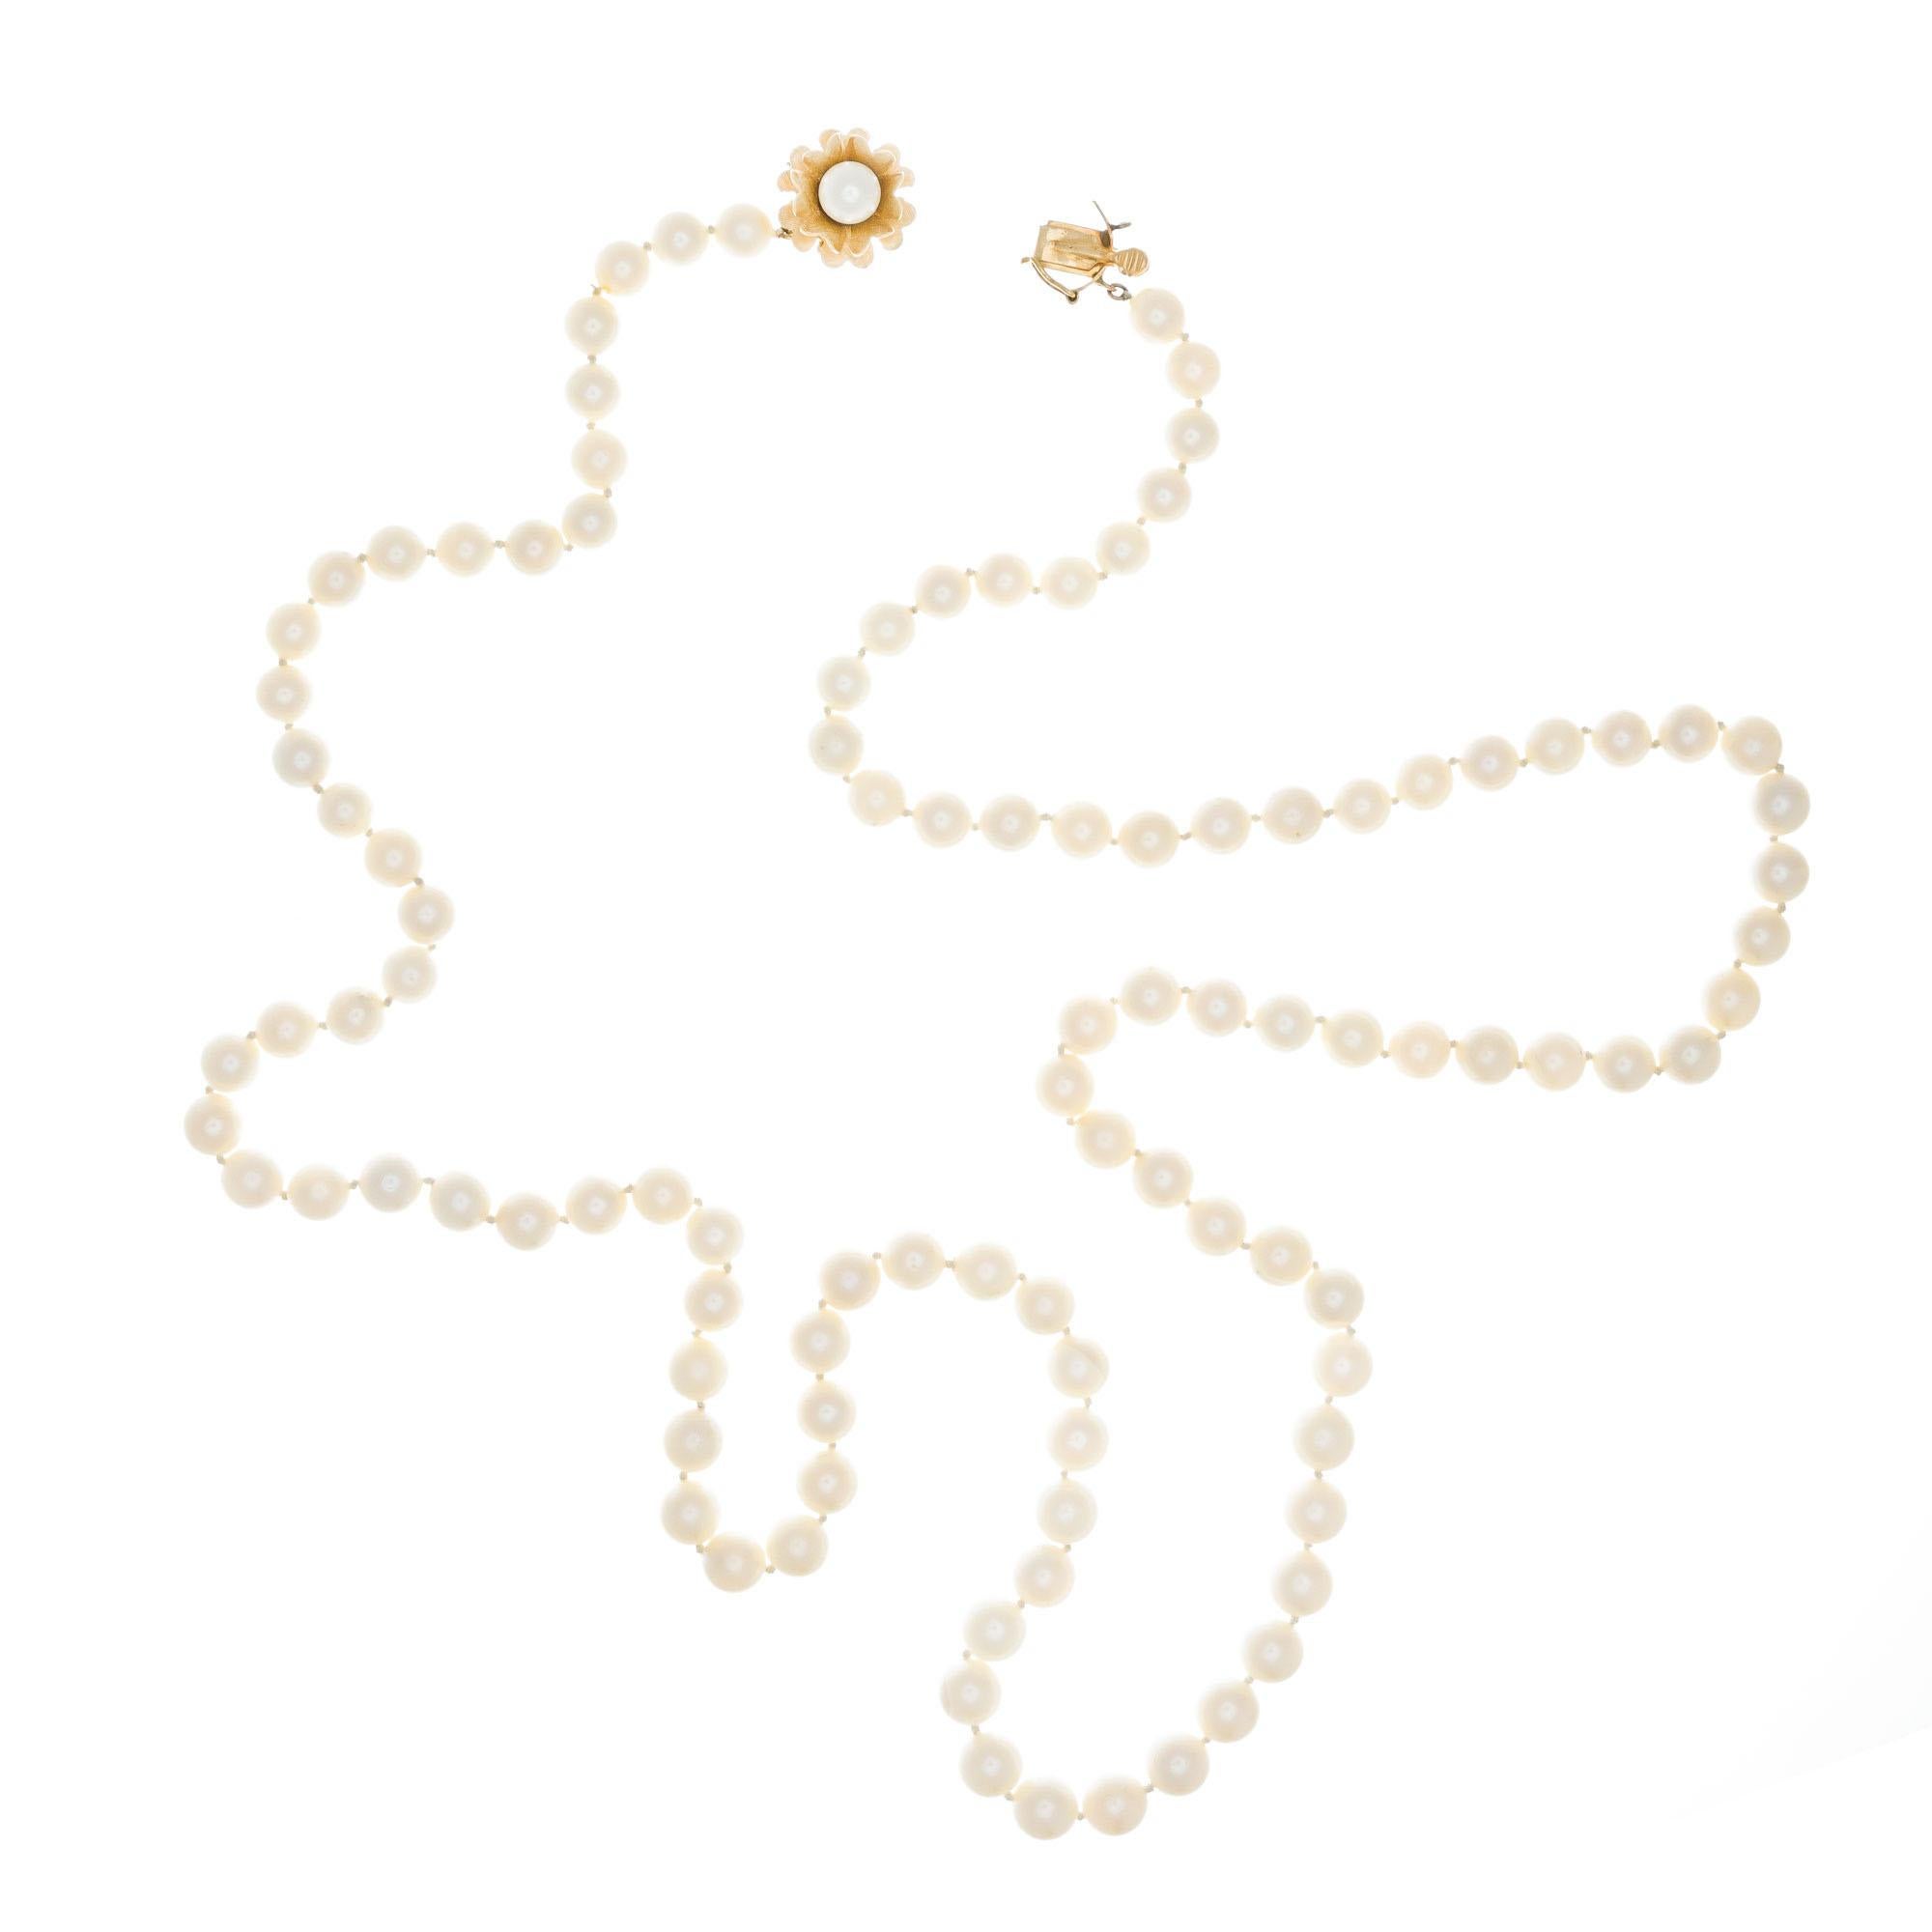 Collier en perles de culture de 30 pouces, datant du milieu des années 1950, avec prise en forme de fleur en or jaune 14k avec une perle. Blanc avec une légère dominante crème, bon lustre. Quelques imperfections à modérées. Bien assorti.

105 perles